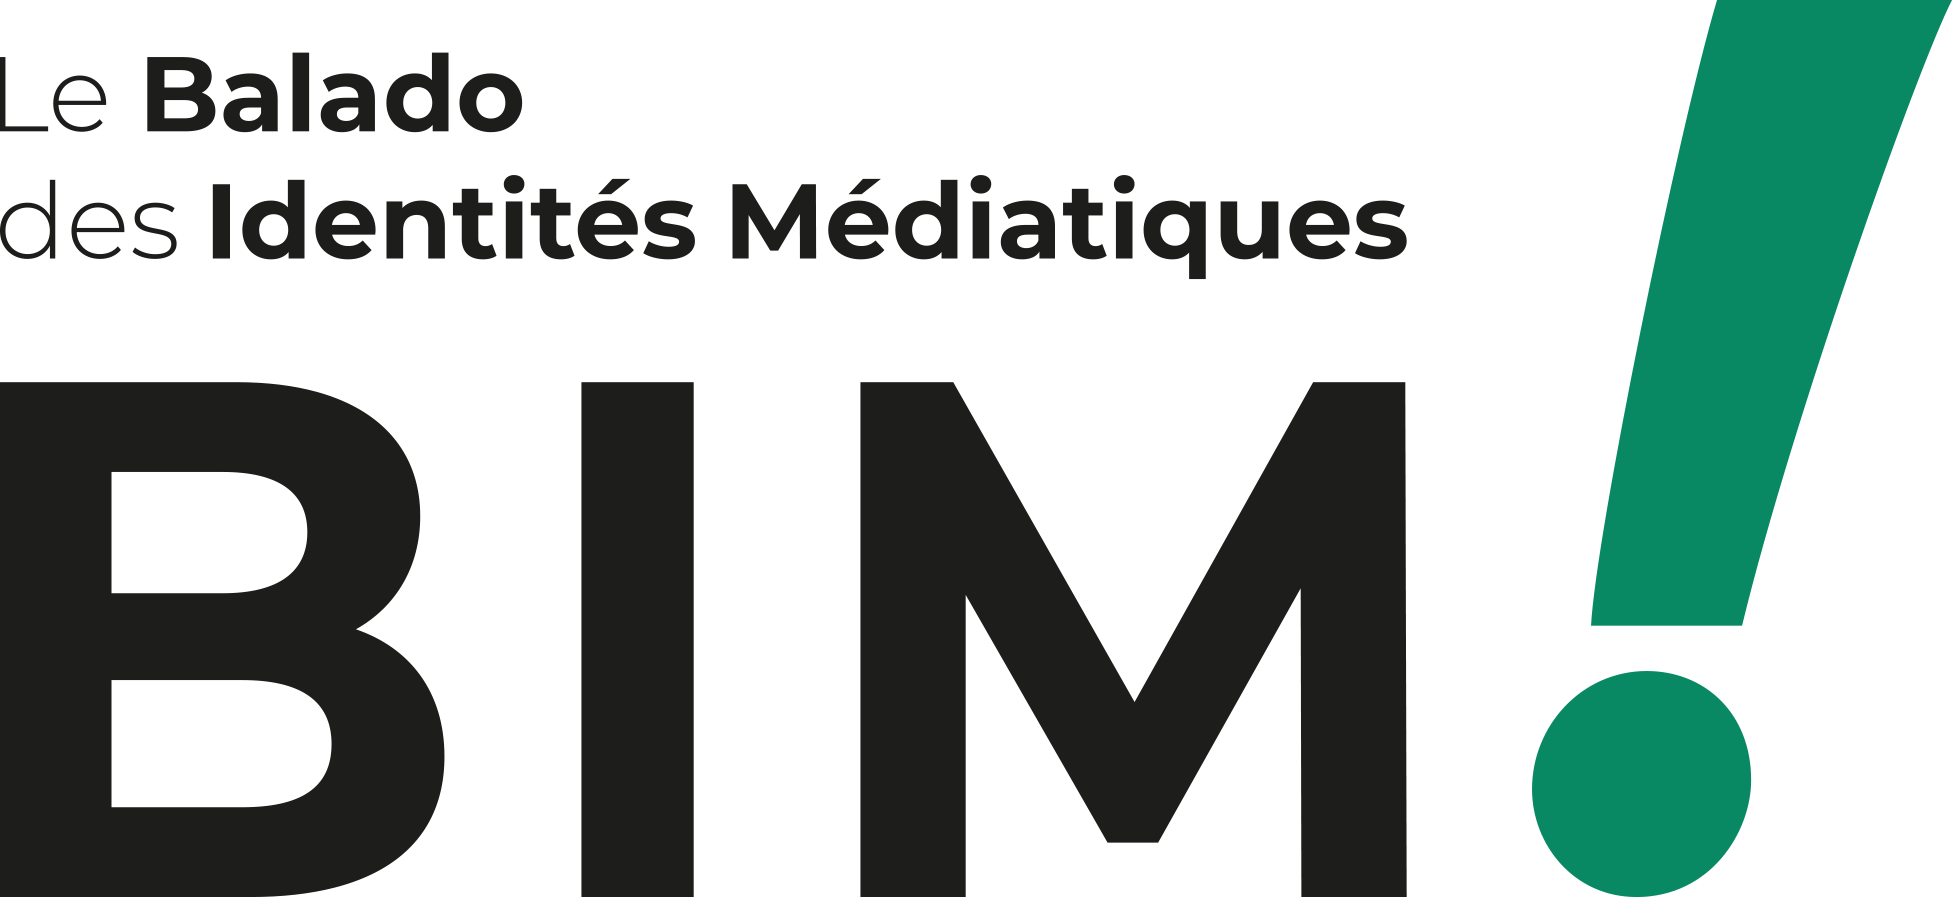 You are currently viewing BIM ! Le balado des identités médiatiques